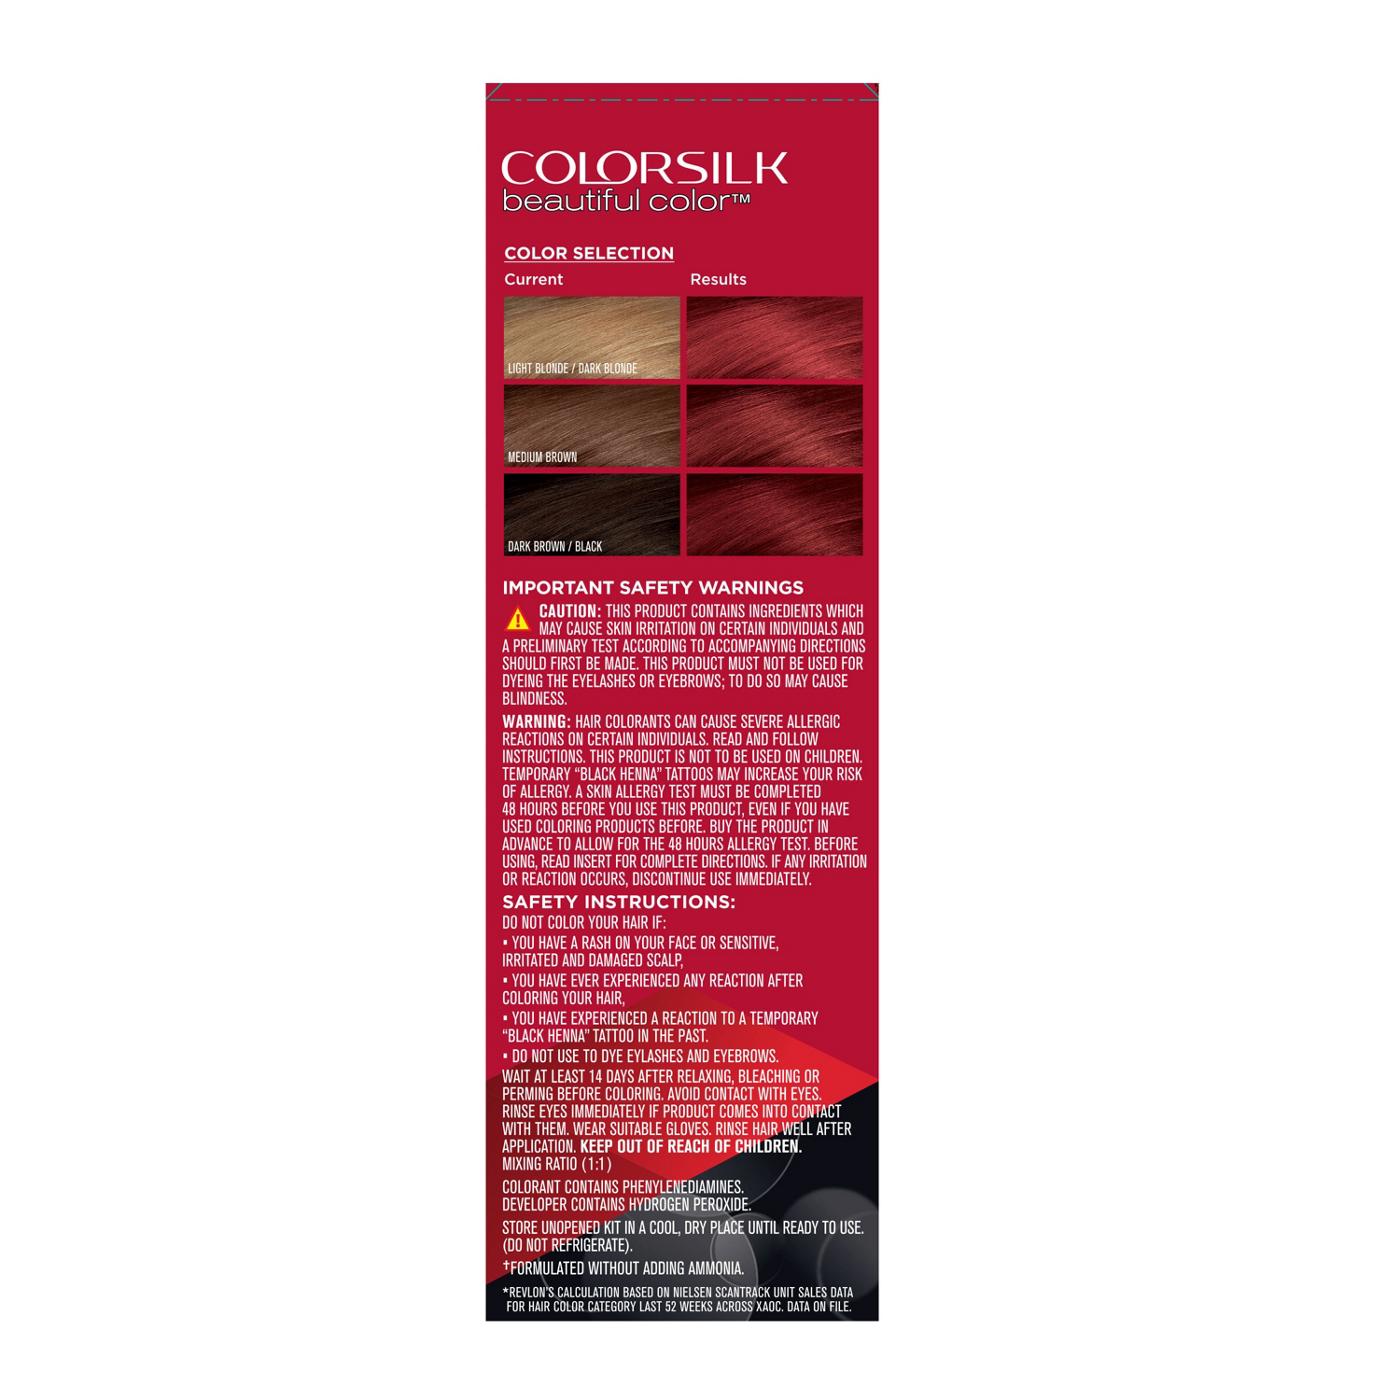 Revlon ColorSilk Hair Color - 66 Cherry Red - Shop Hair Color at H-E-B